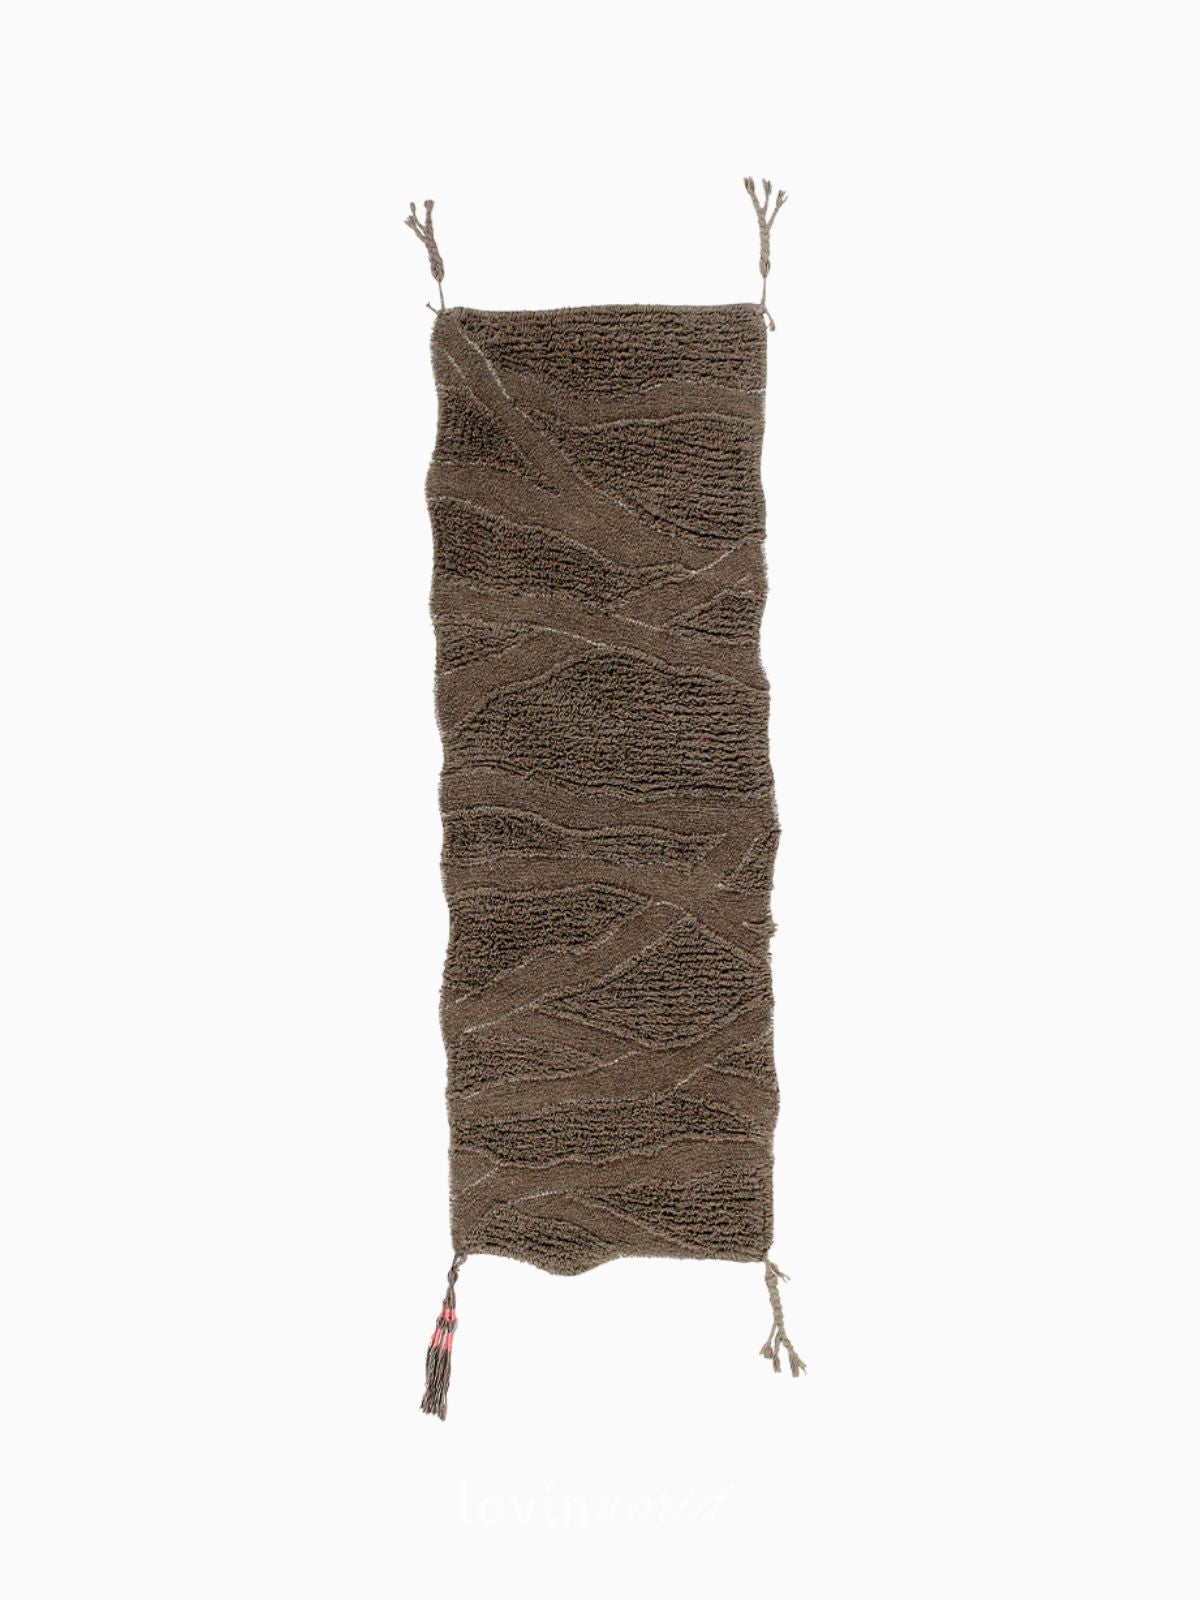 Runner in lana lavabile Enkang in colore marrone 70x200 cm.-1